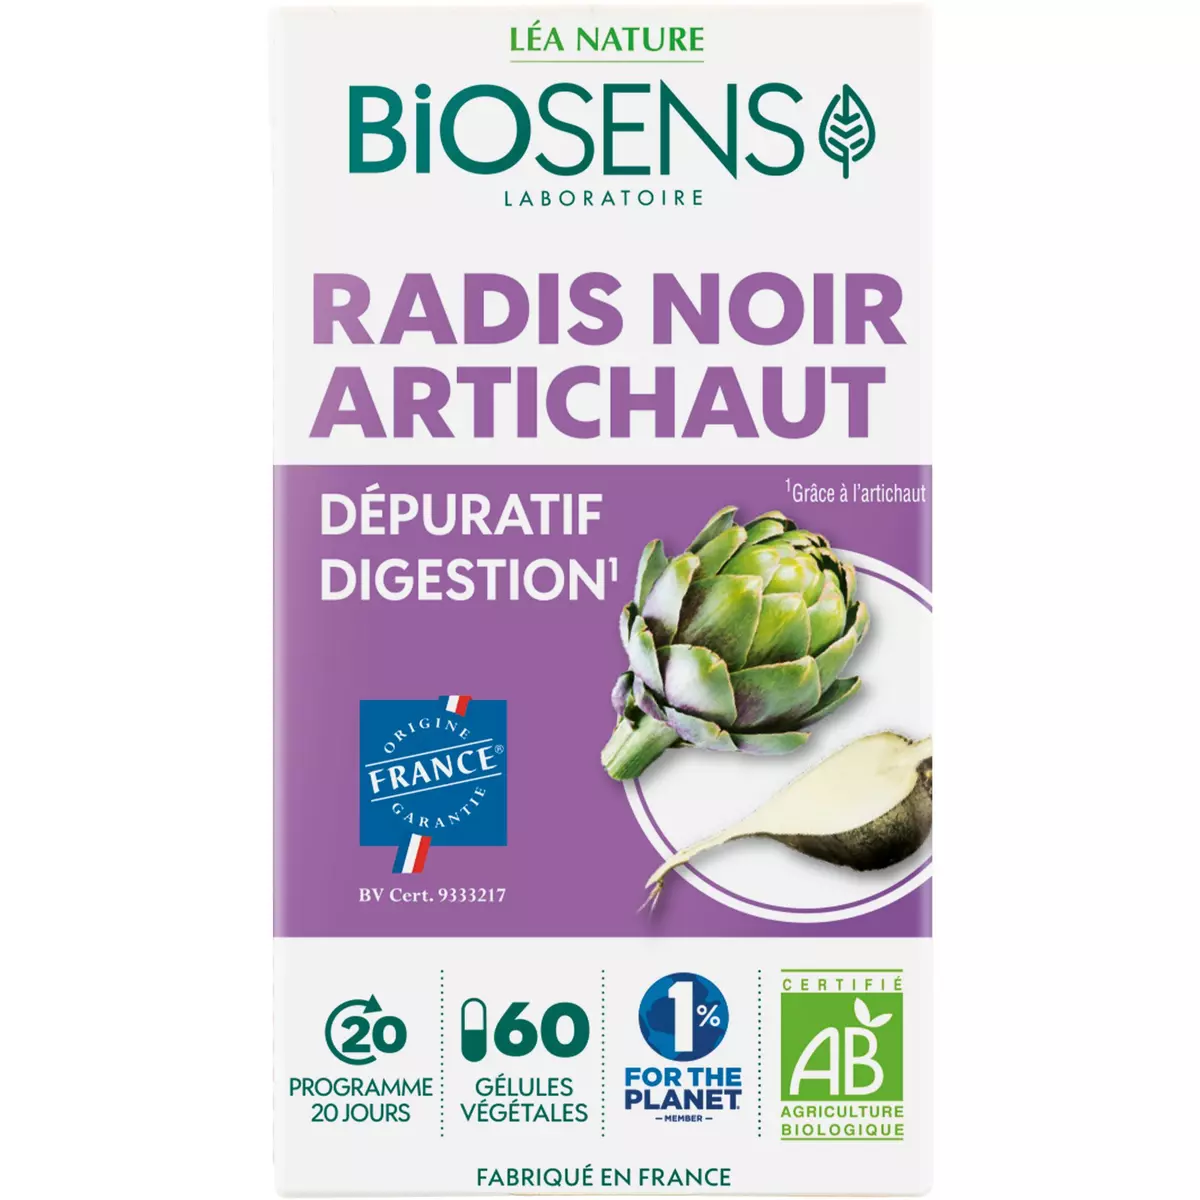 BIOSENS Gélules végétales dépuratif digestion radis noir artichaut 60 gélules 30g